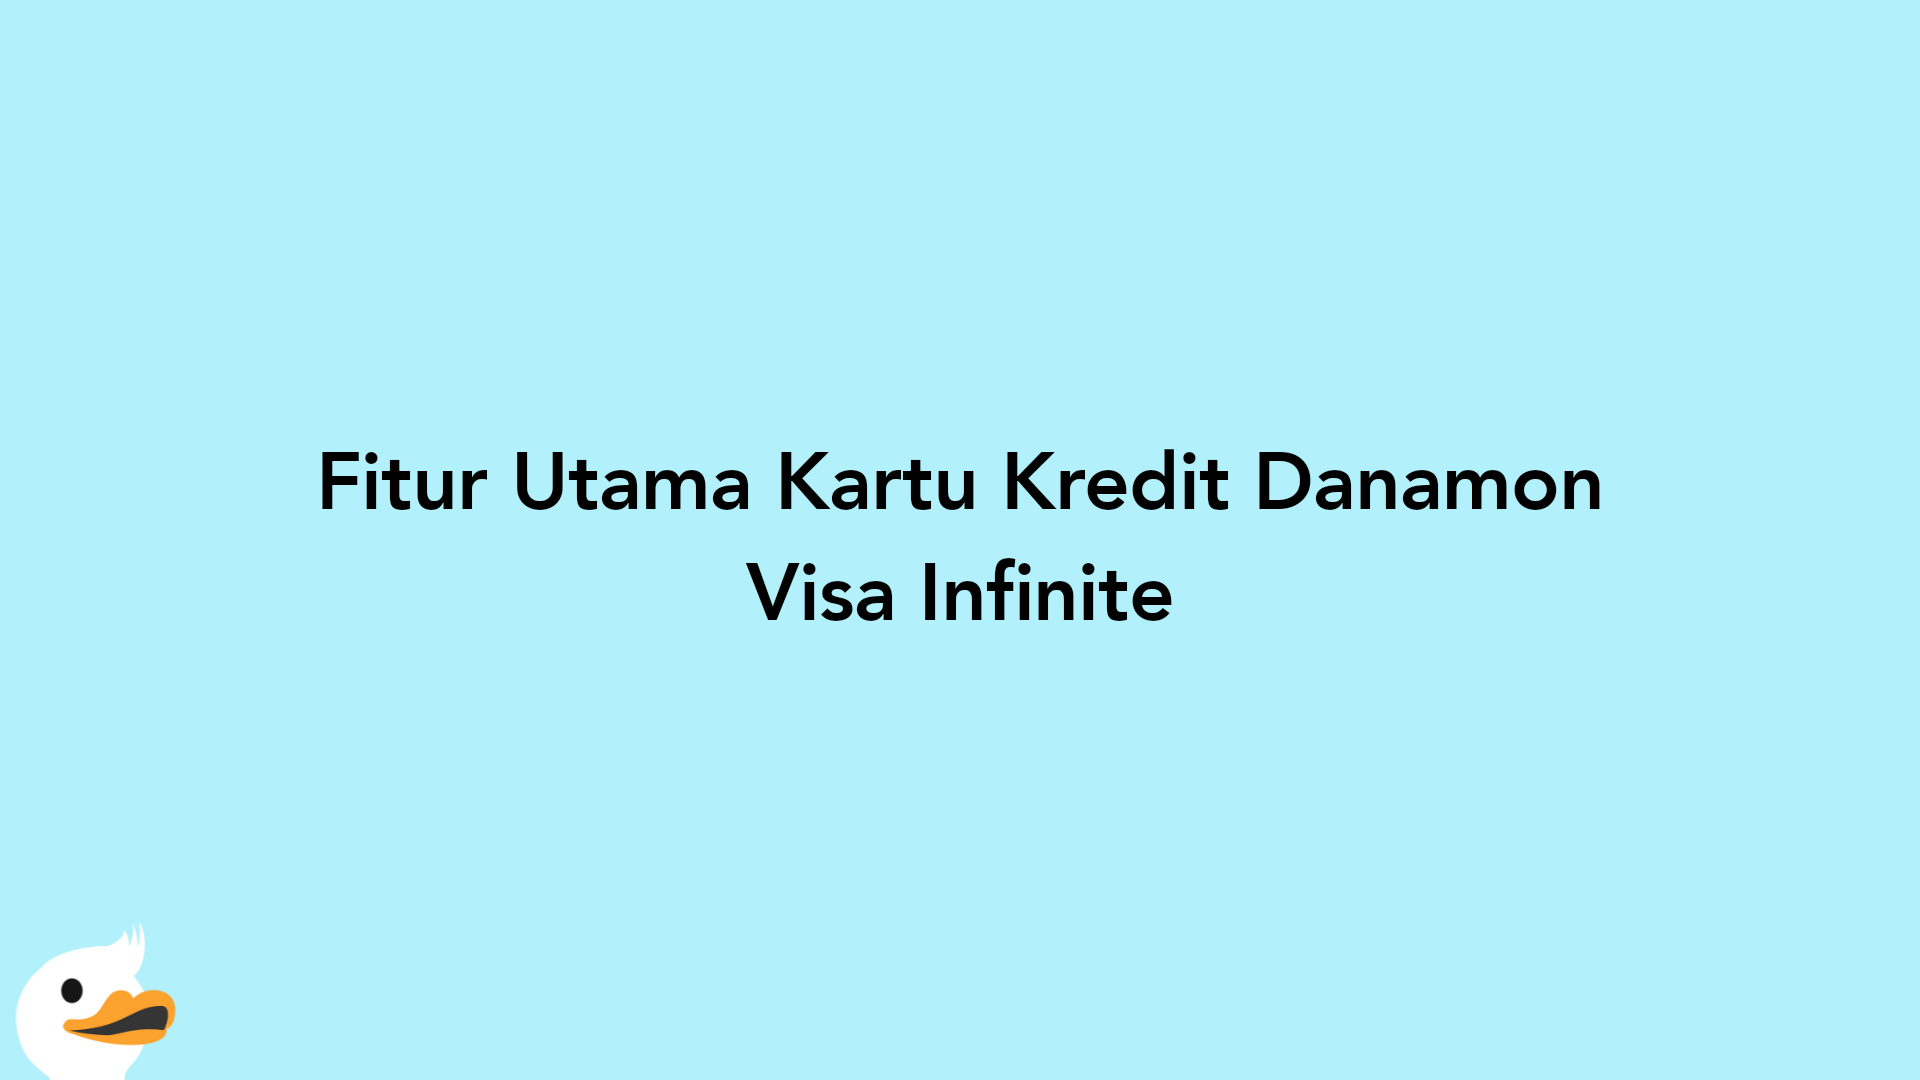 Fitur Utama Kartu Kredit Danamon Visa Infinite